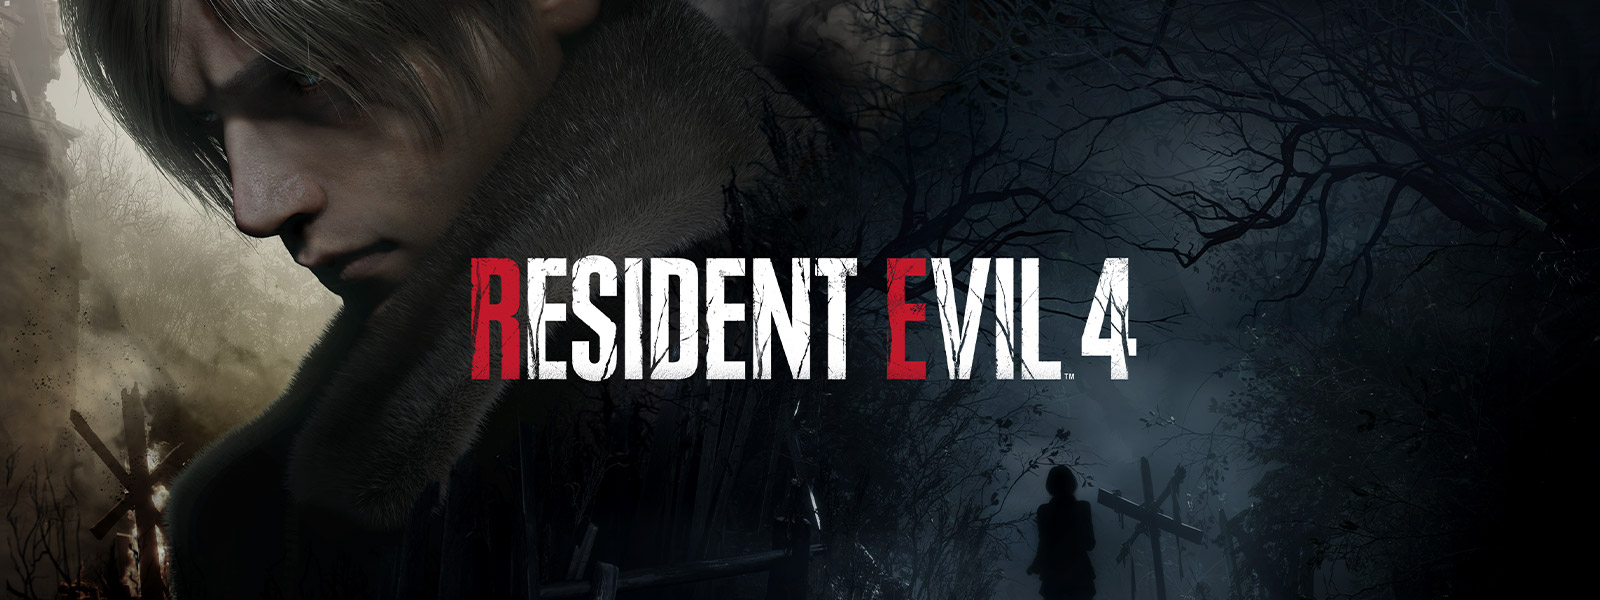 Resident Evil 4, Un hombre de cabello blanco se aparta con aire de gravedad mientras una mujer anda por un espeluznante sendero en un bosque.